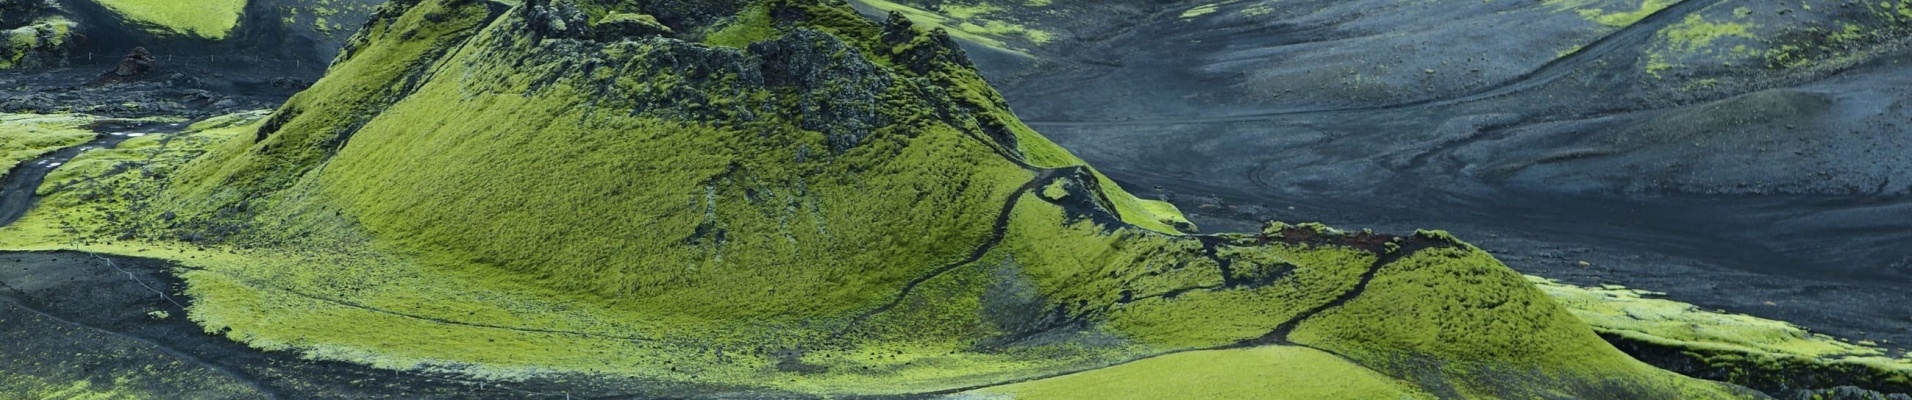 Golden Circle Iceland - Volcanic landscape in Lakagigar, Iceland highlands